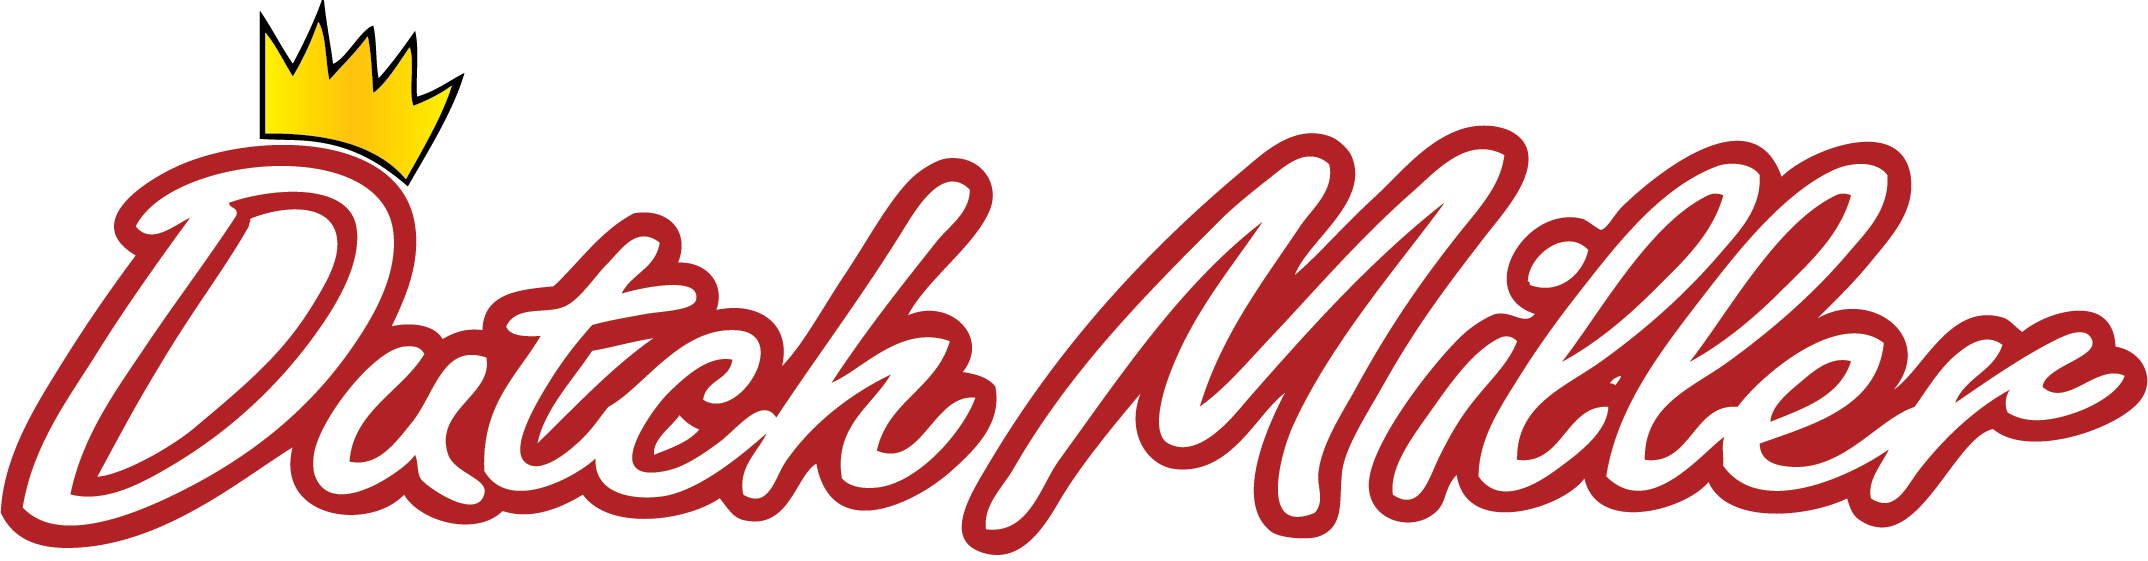 Dutch Miller logo